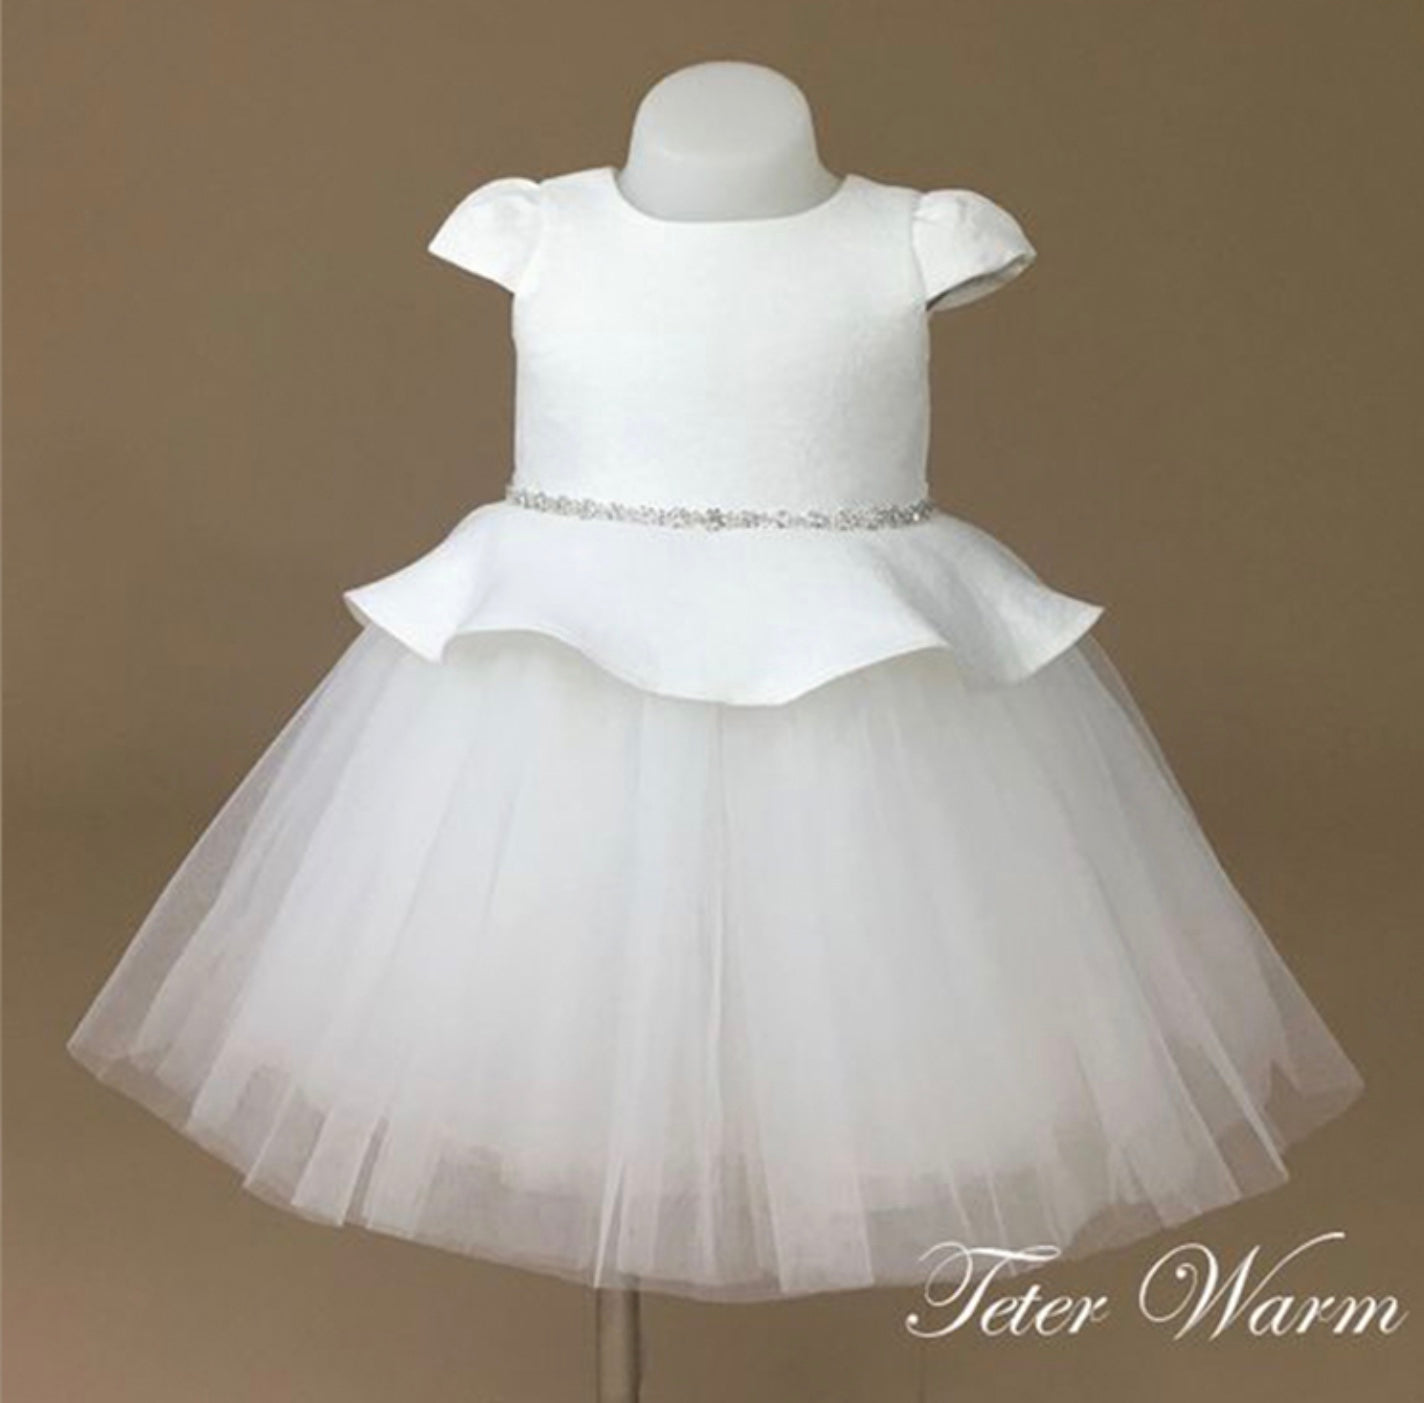 Teter Warm White Peplum Dress